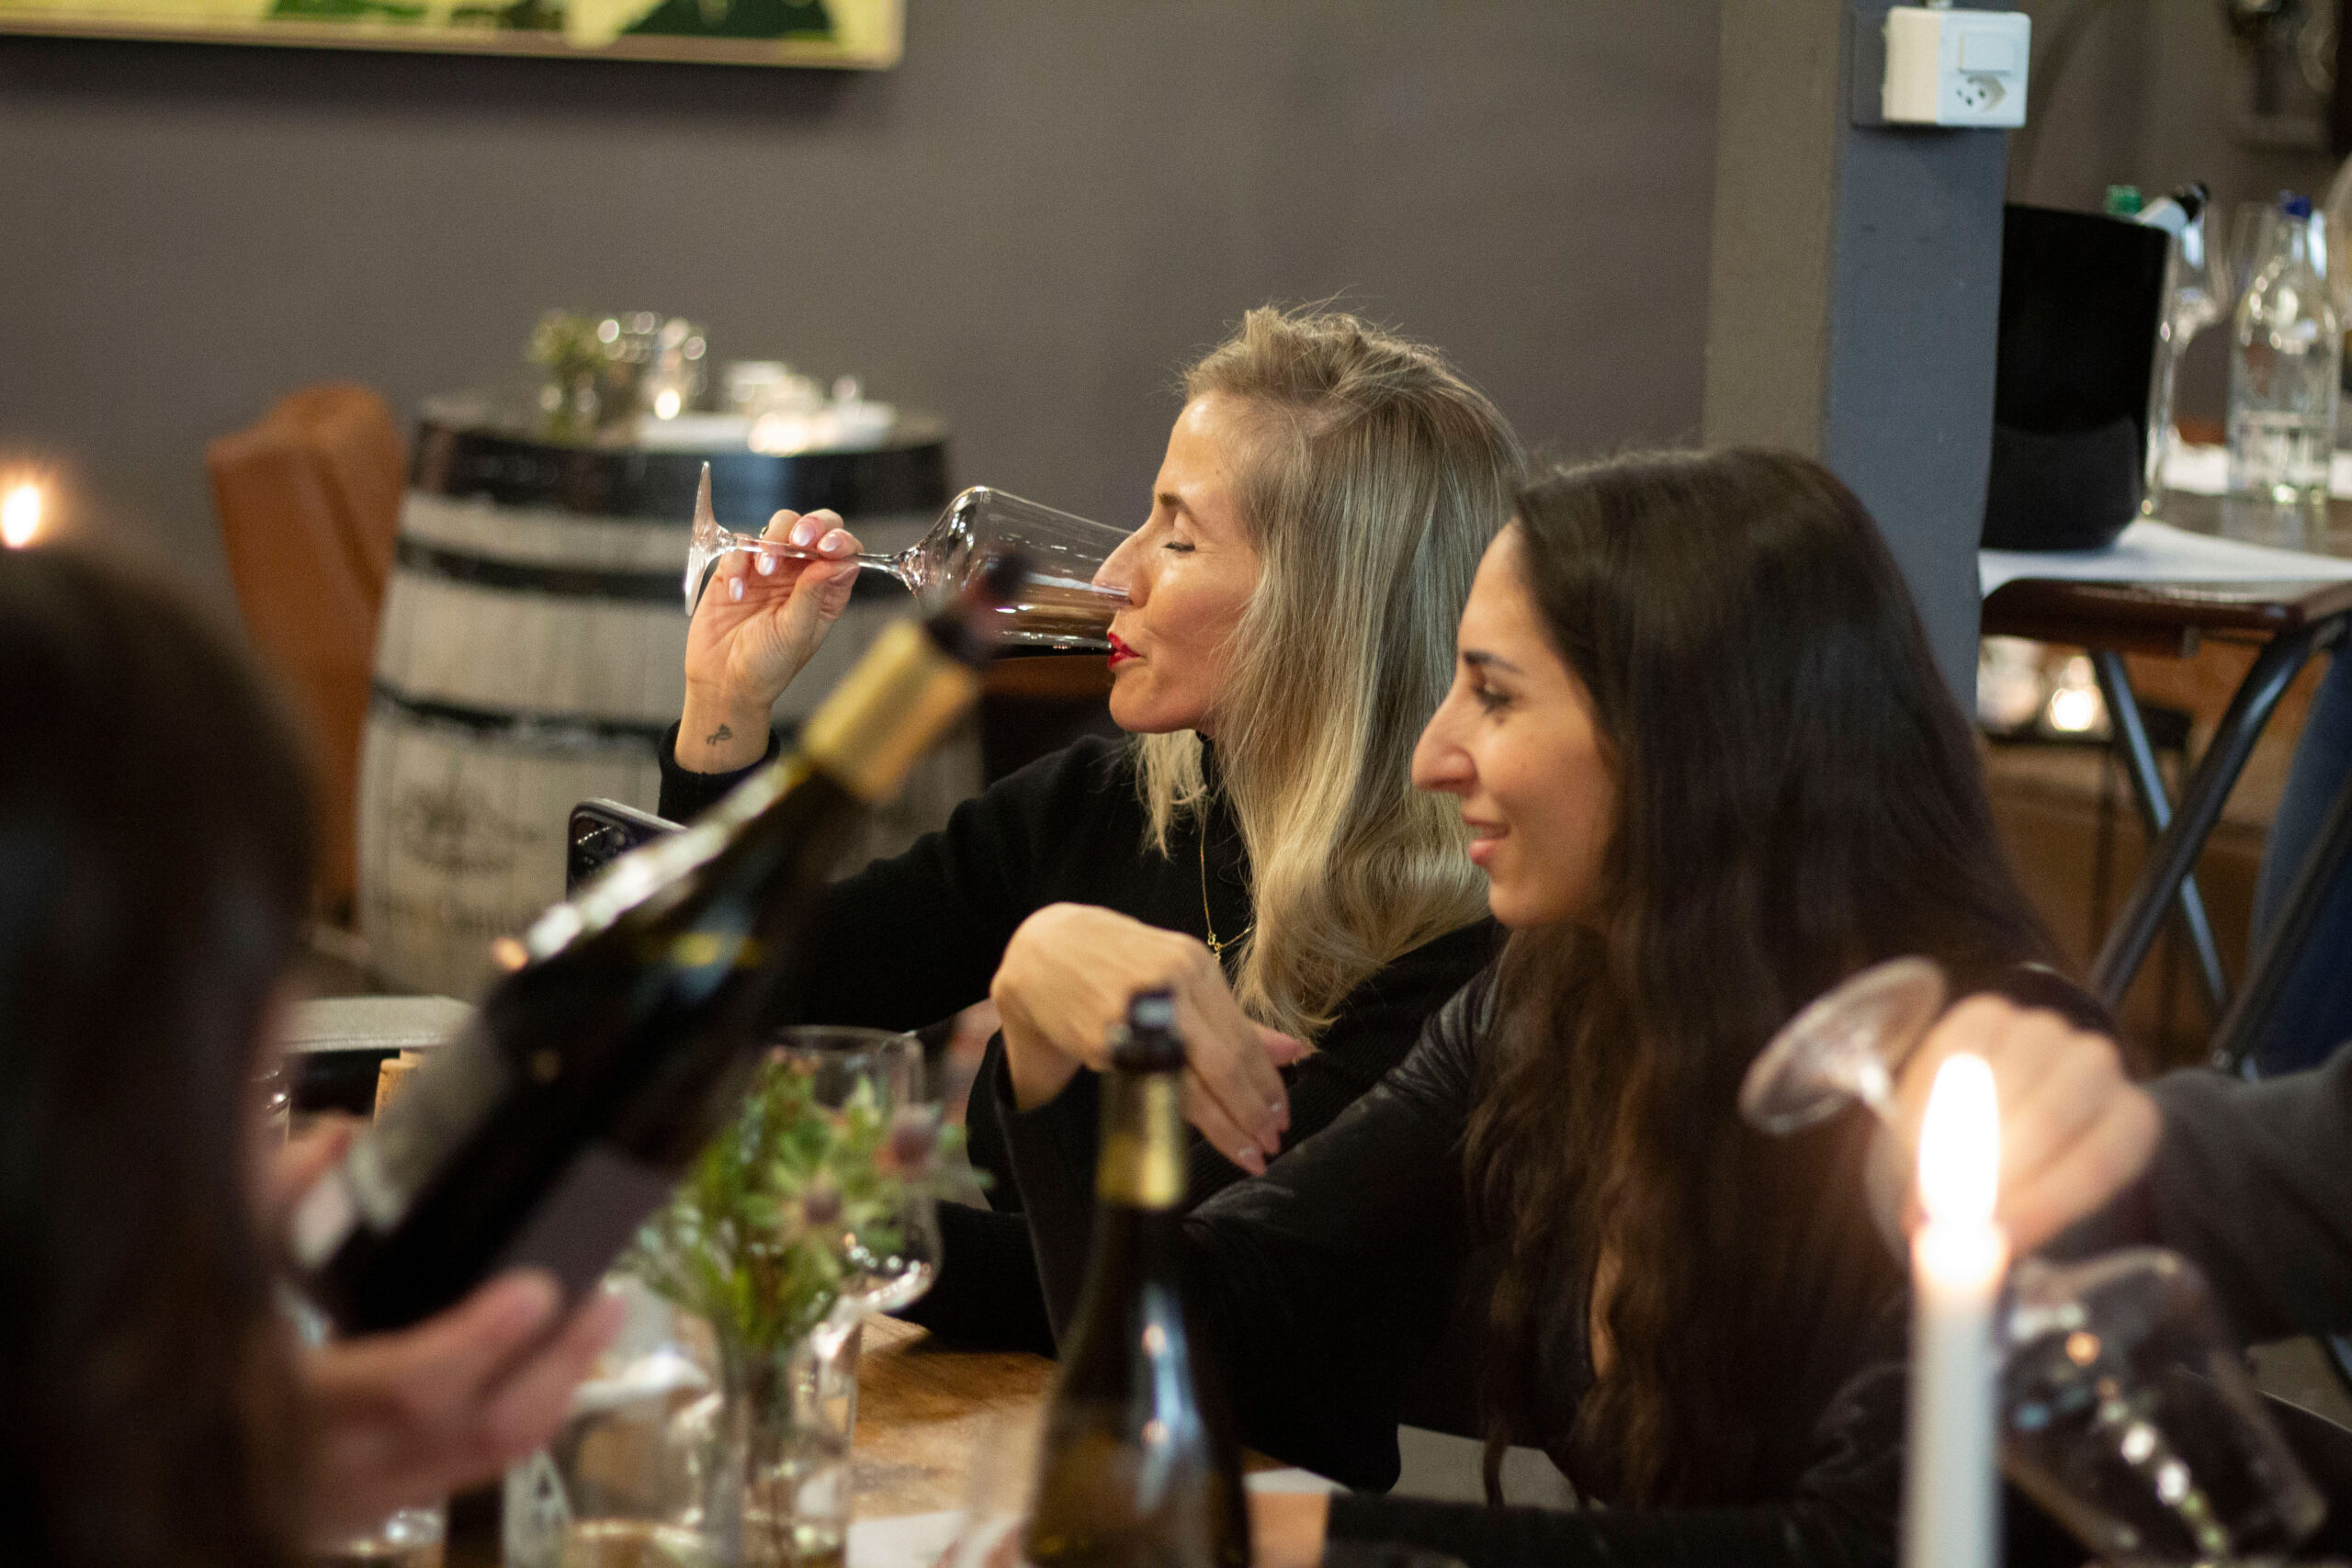 Mehrere Personen auf dem Bild, die Wein trinken und miteinander reden und interagieren.